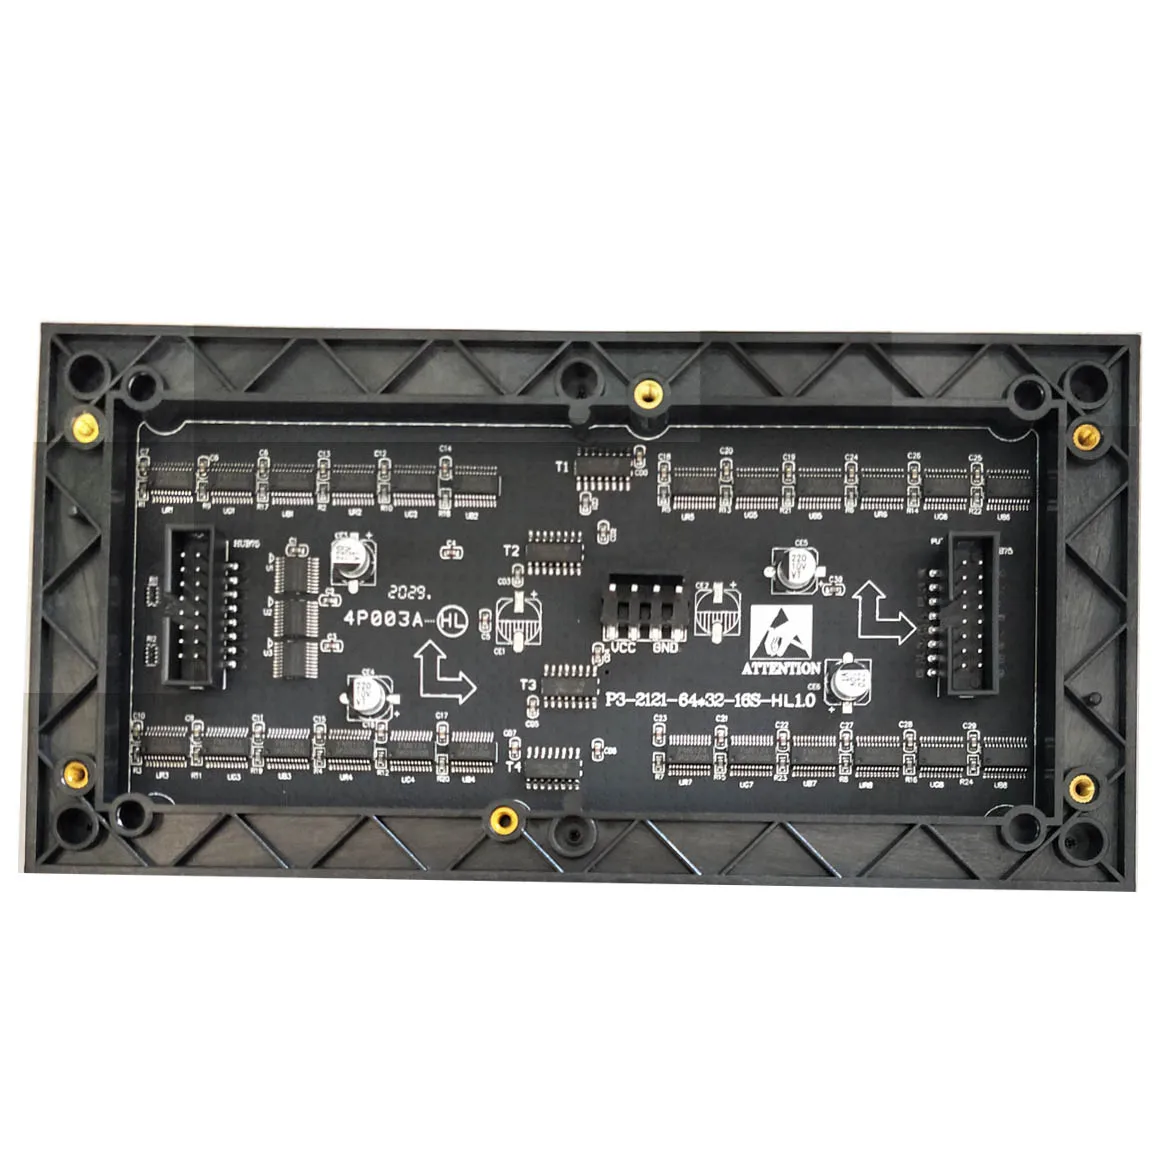 Cormean rgb p3 led display screen module, высококачественный светодиодный модуль nationstar p3 192mmx96mm 64x32 для помещений